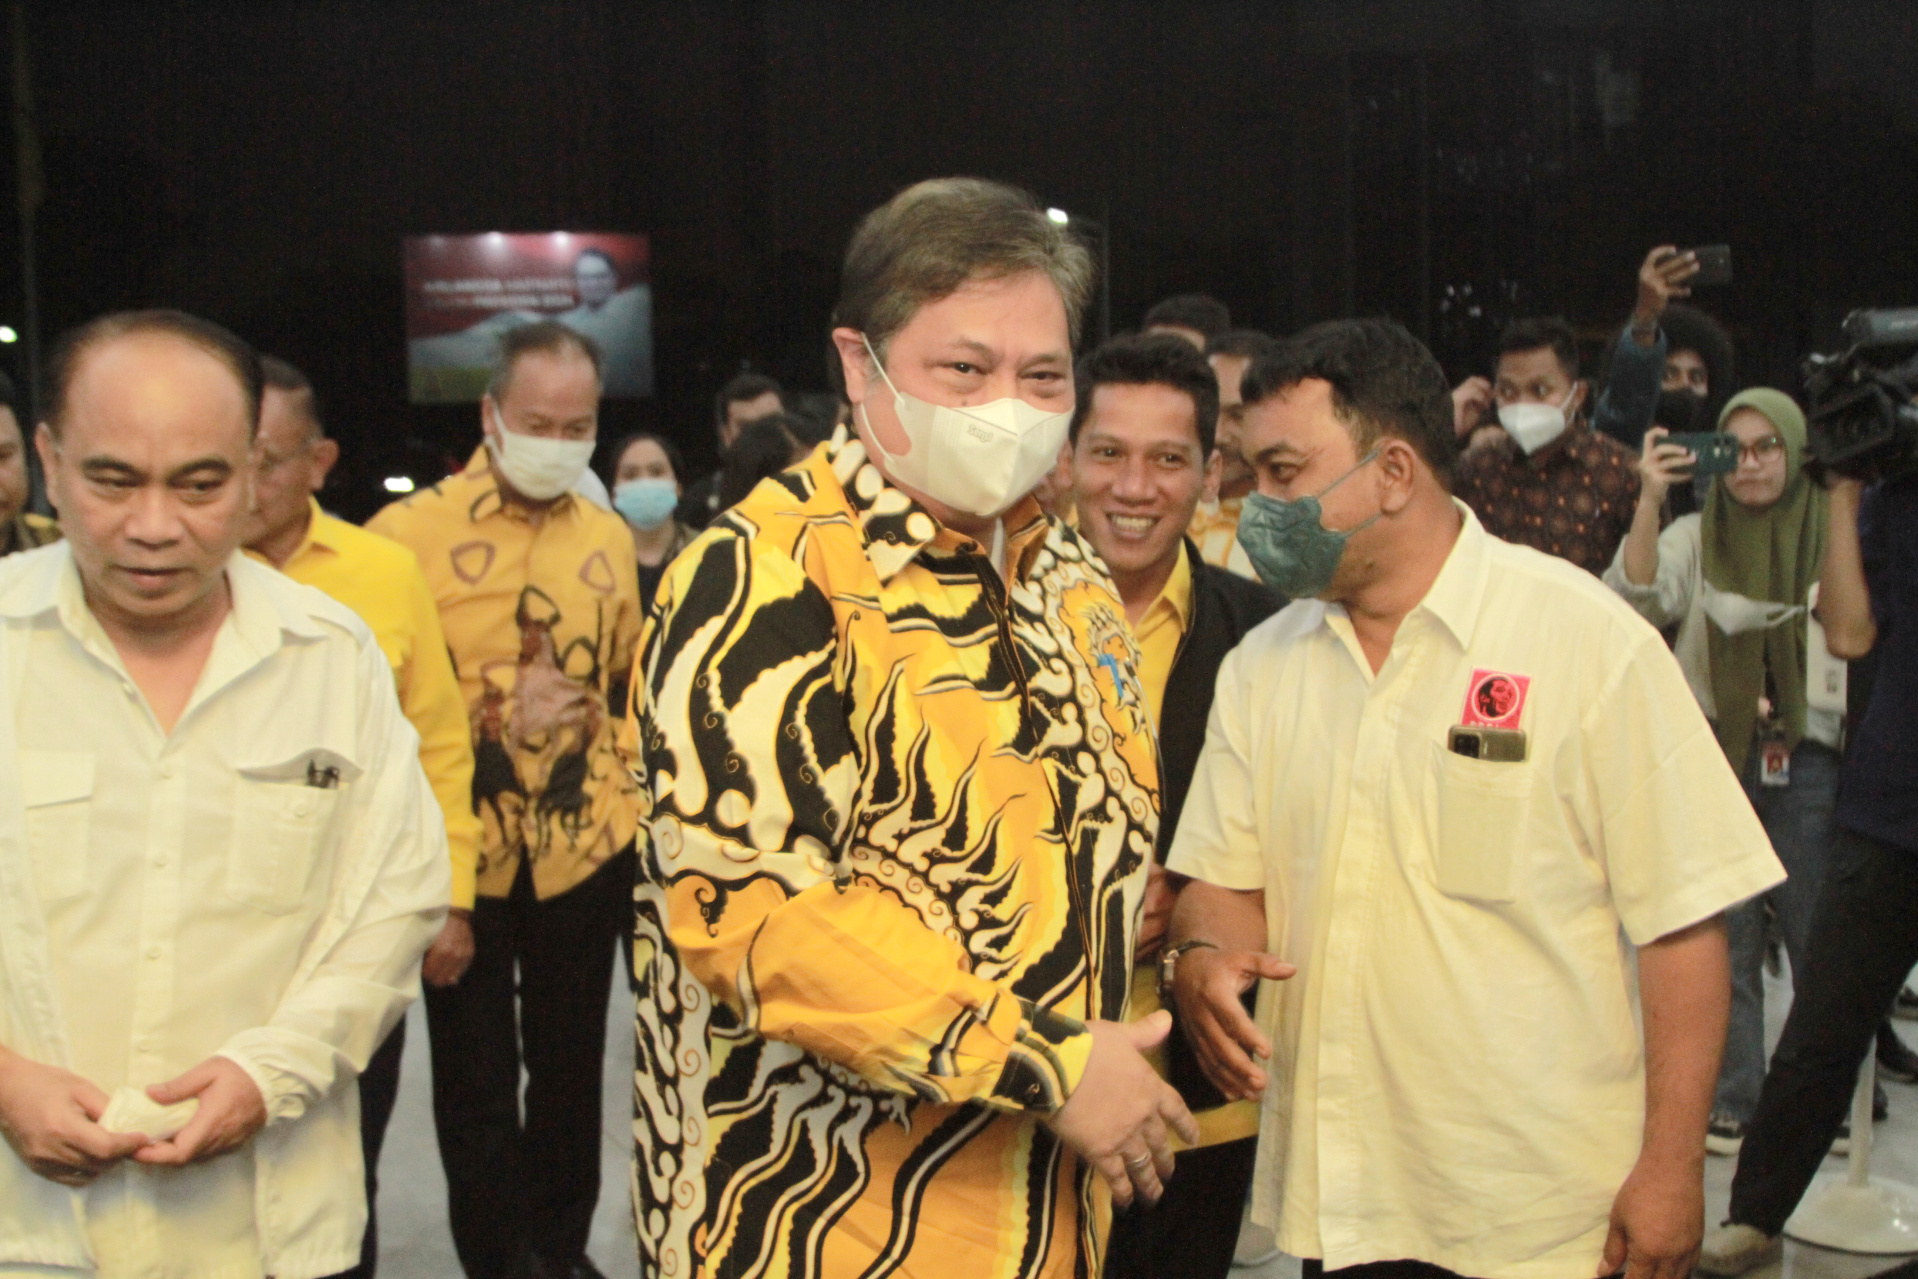 Relawan Jokowi bertemu Ketua Umum Partai Golkar Airlangga Hartato untuk bersilaturahmi (Ashar/SinPo.id)